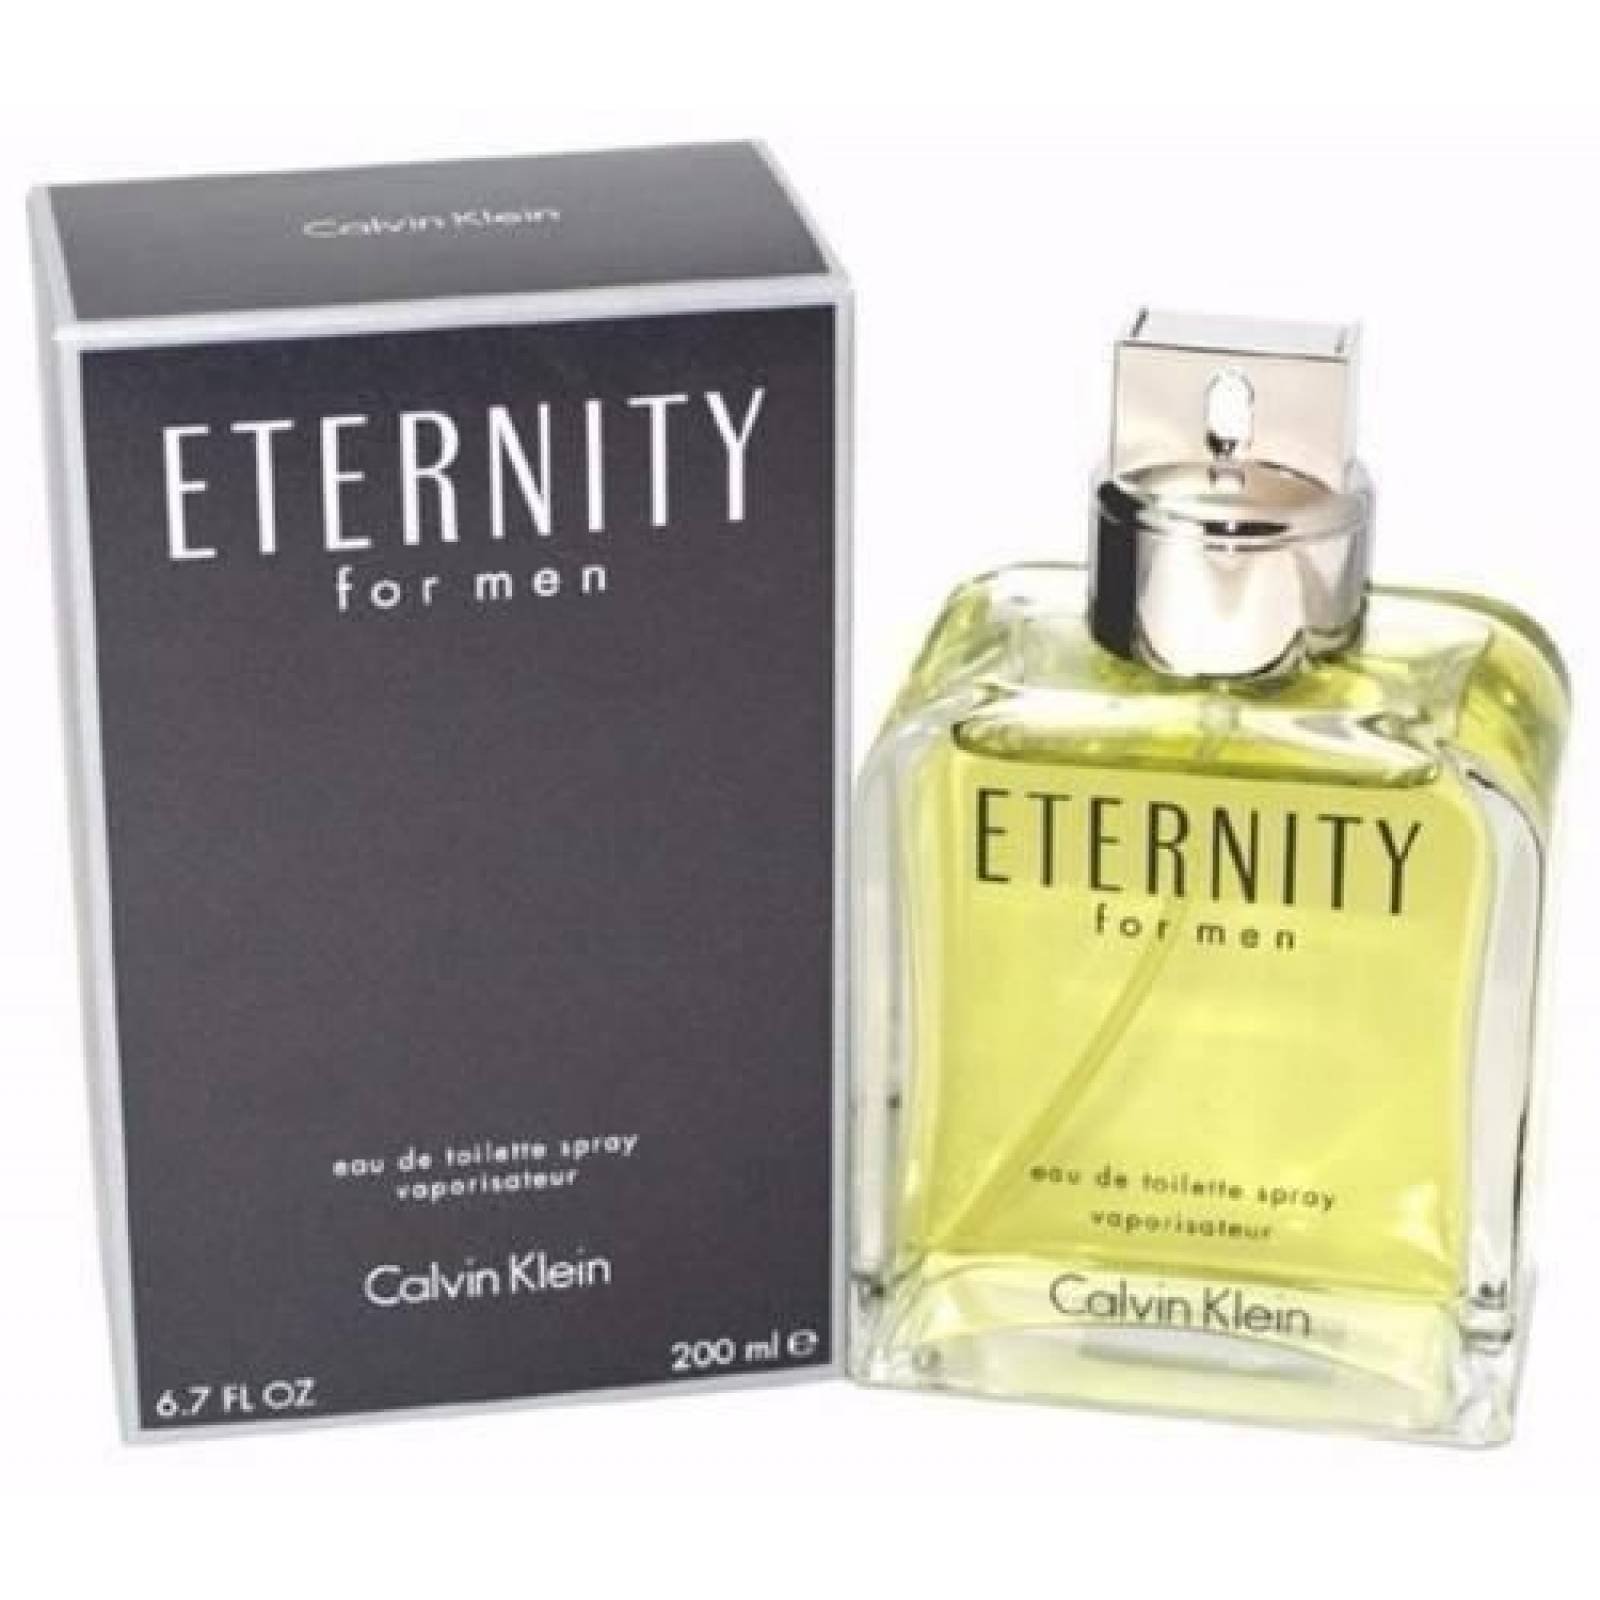 Eternity Caballero 200 Ml Calvin Klein Spray - Original